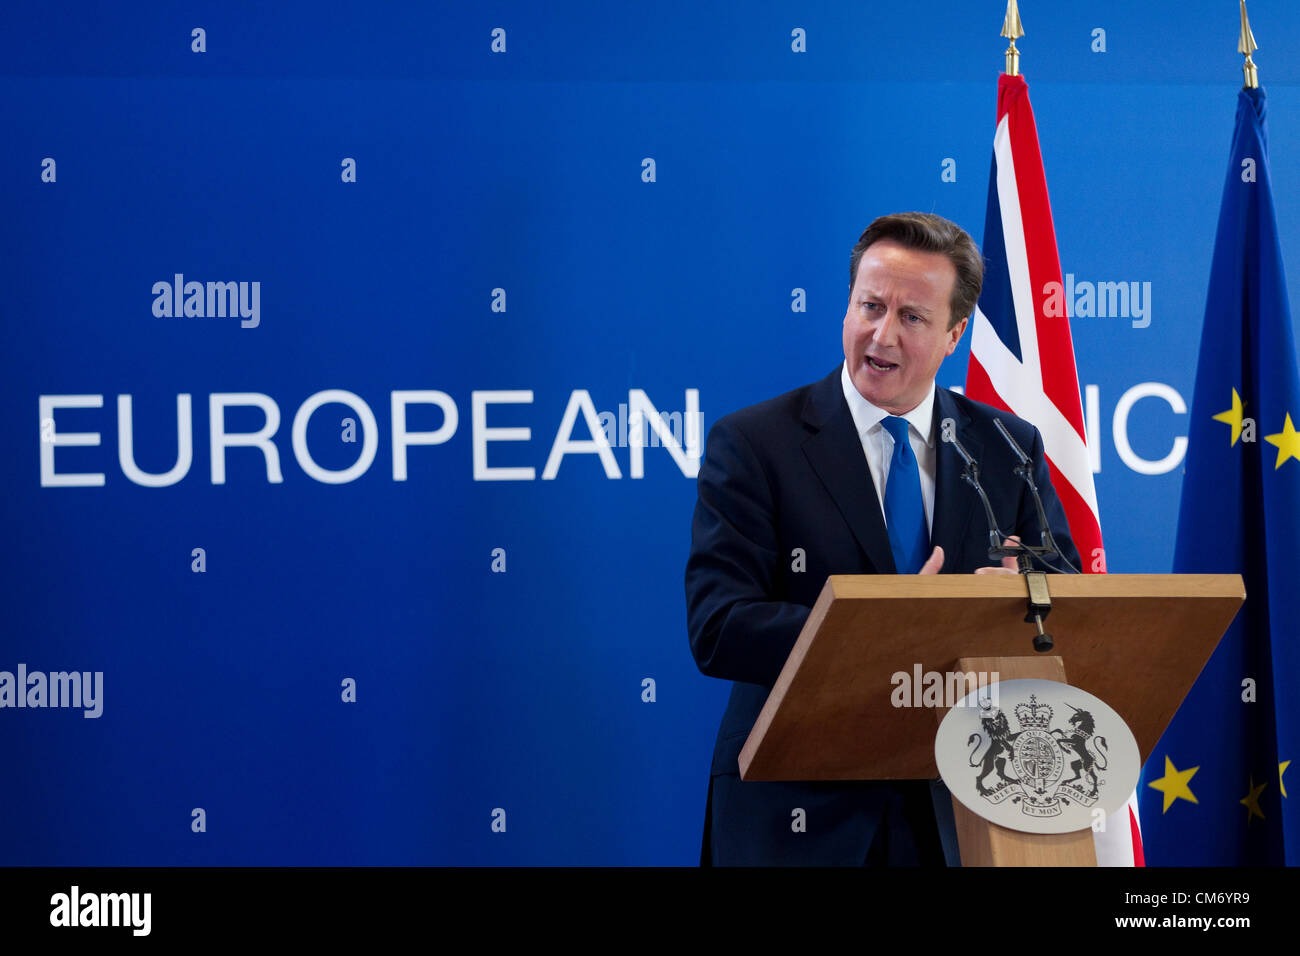 David Cameron, Premierminister des Vereinigten Königreichs gibt einem Pressebriefing am Freitagmorgen auf der Tagung des Europäischen Rates in Brüssel, Justus-Lipsius-Gebäude. Foto: Jeff Gilbert. 19.10.2012. Brüssel, Belgien. Stockfoto